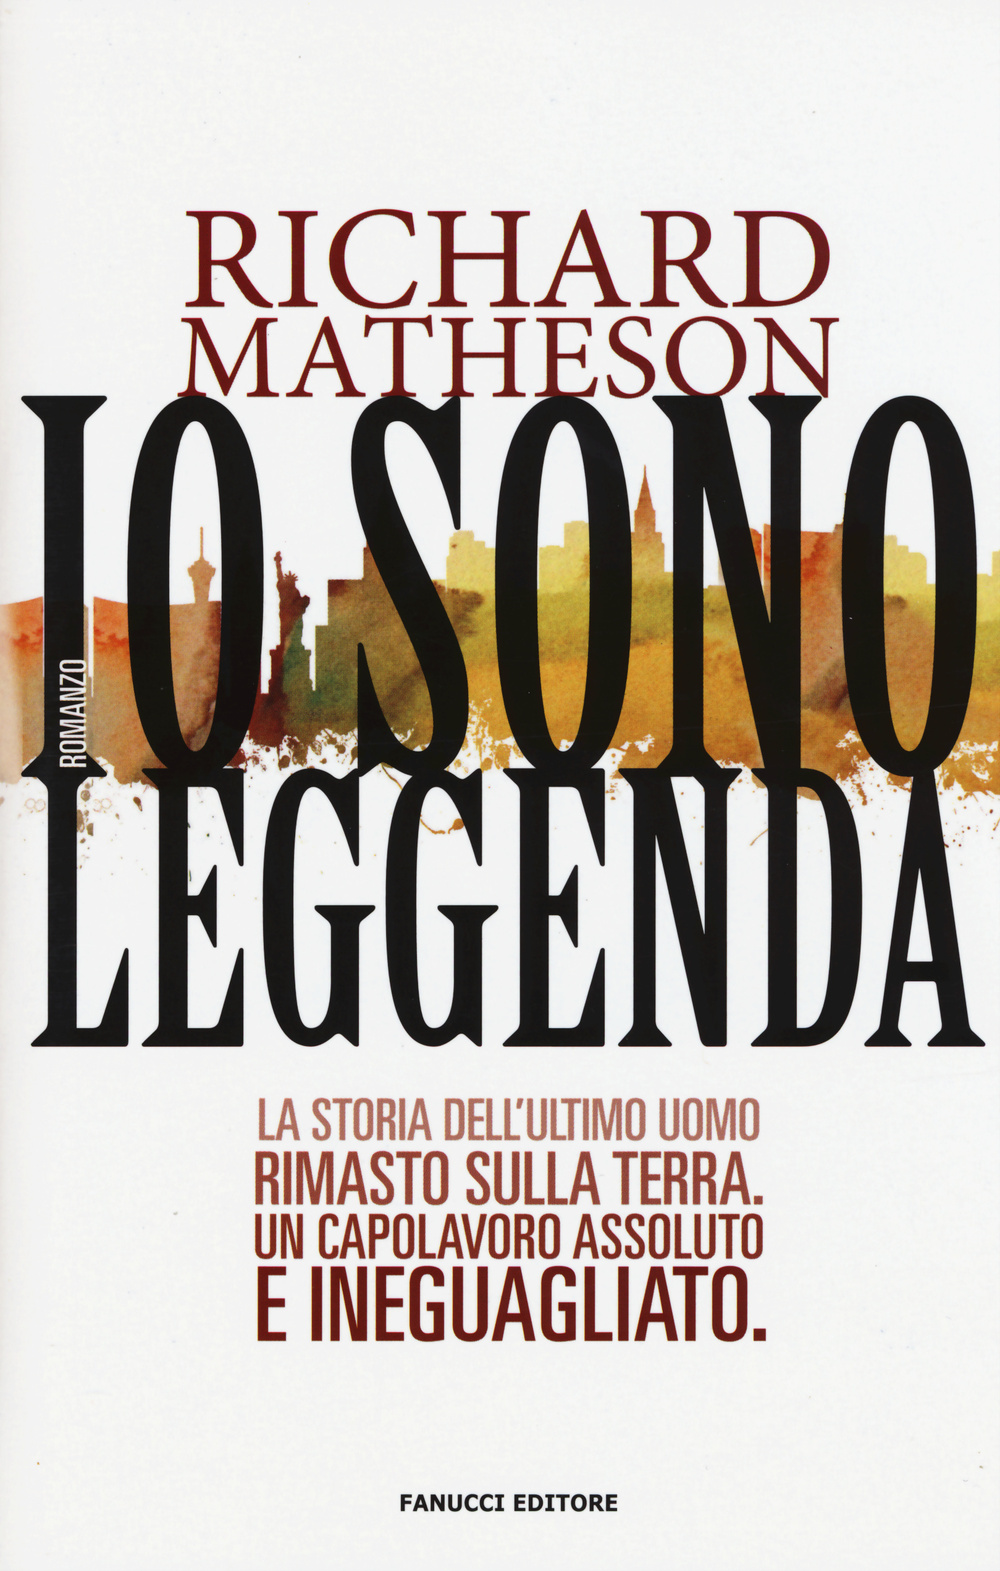 Richard Matheson – Io sono leggenda #RichardMatheson